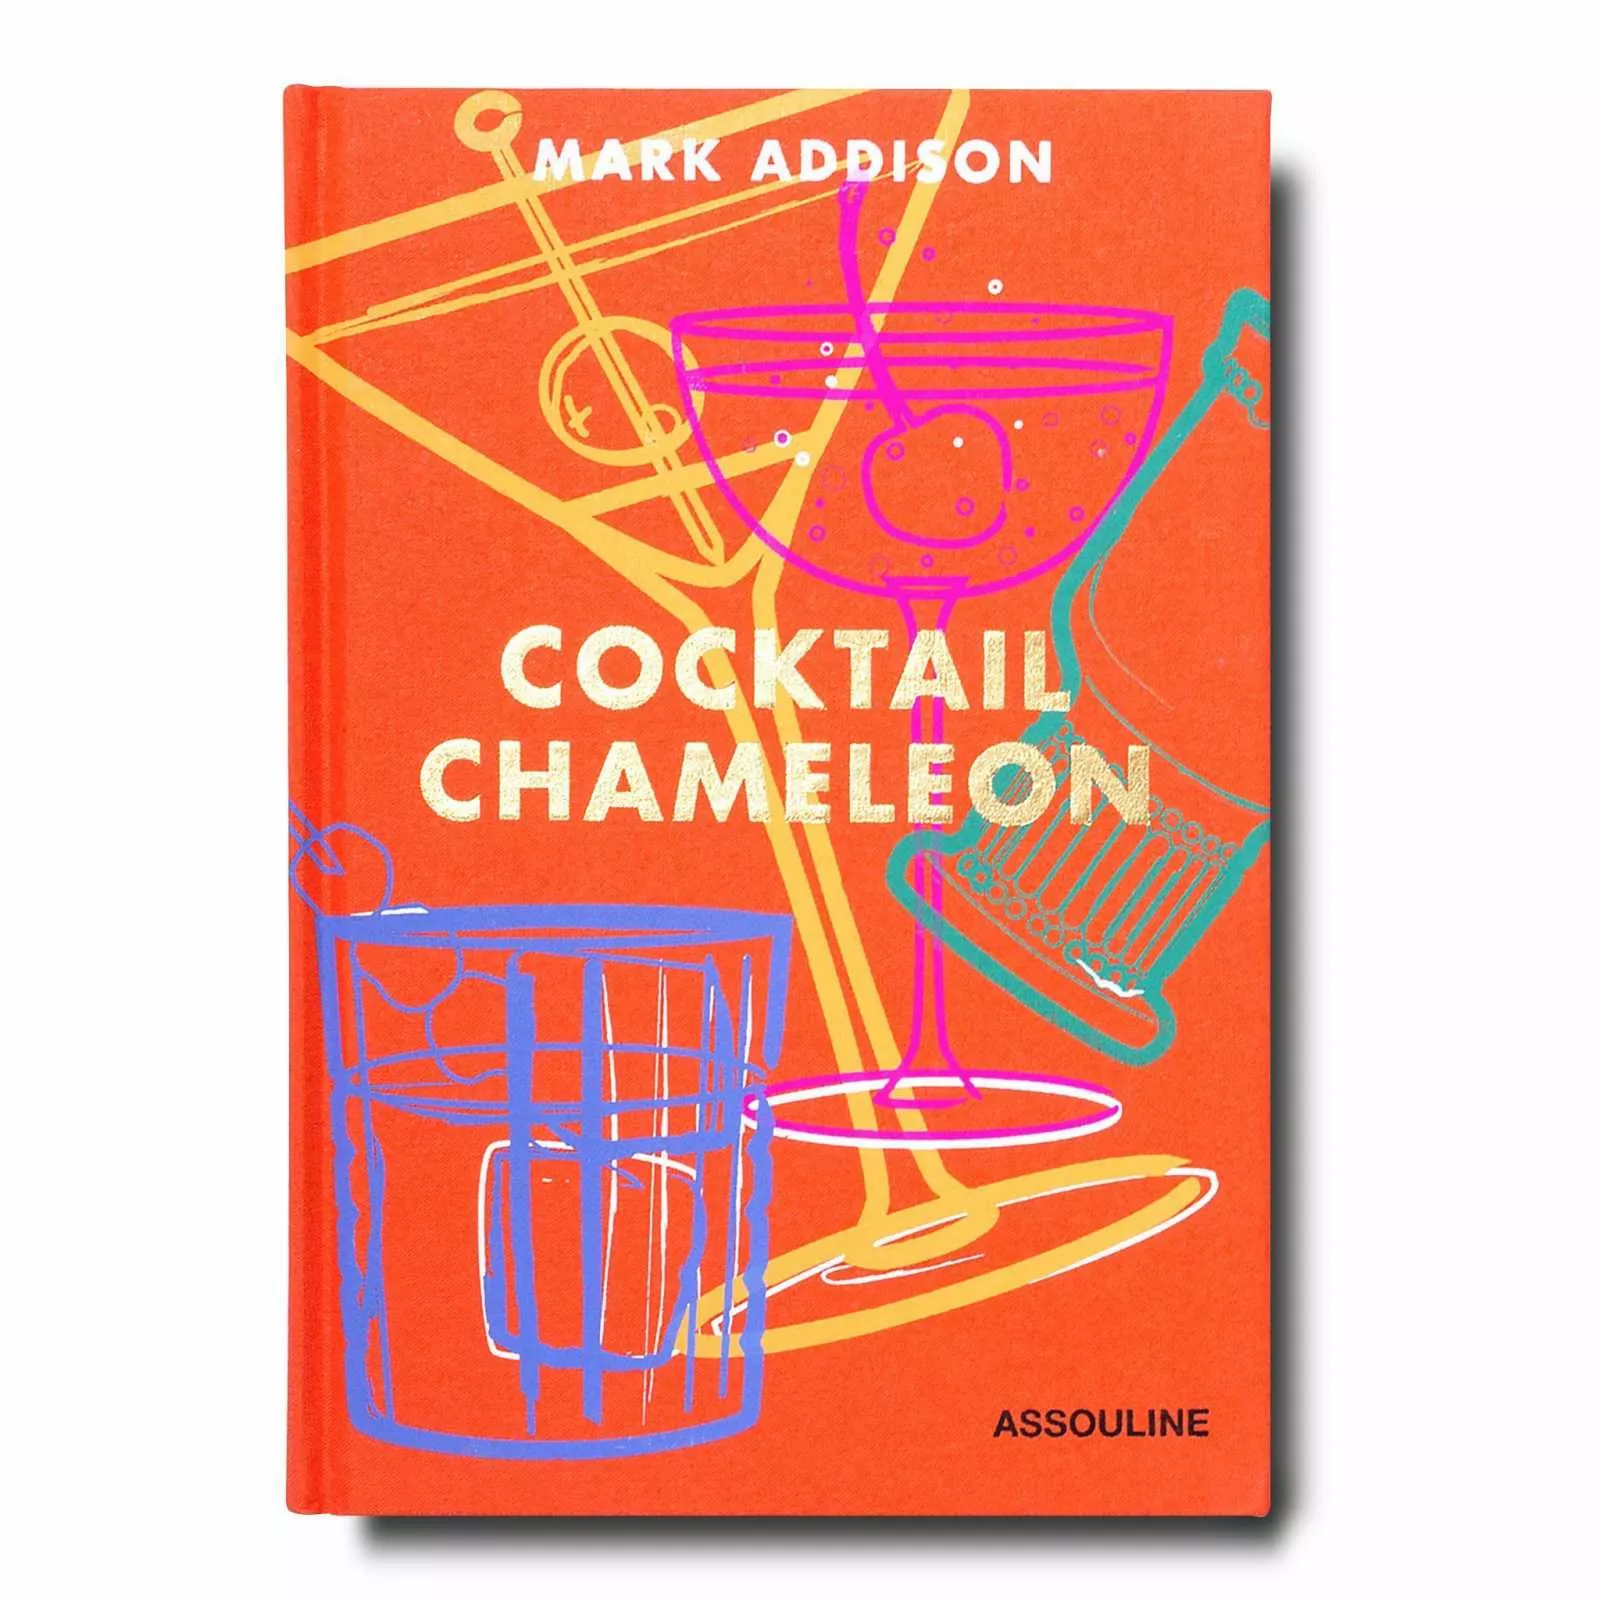 Книга "Cocktail Chameleon" Assouline Icons Collection (9781614286196) - Фото nav 1